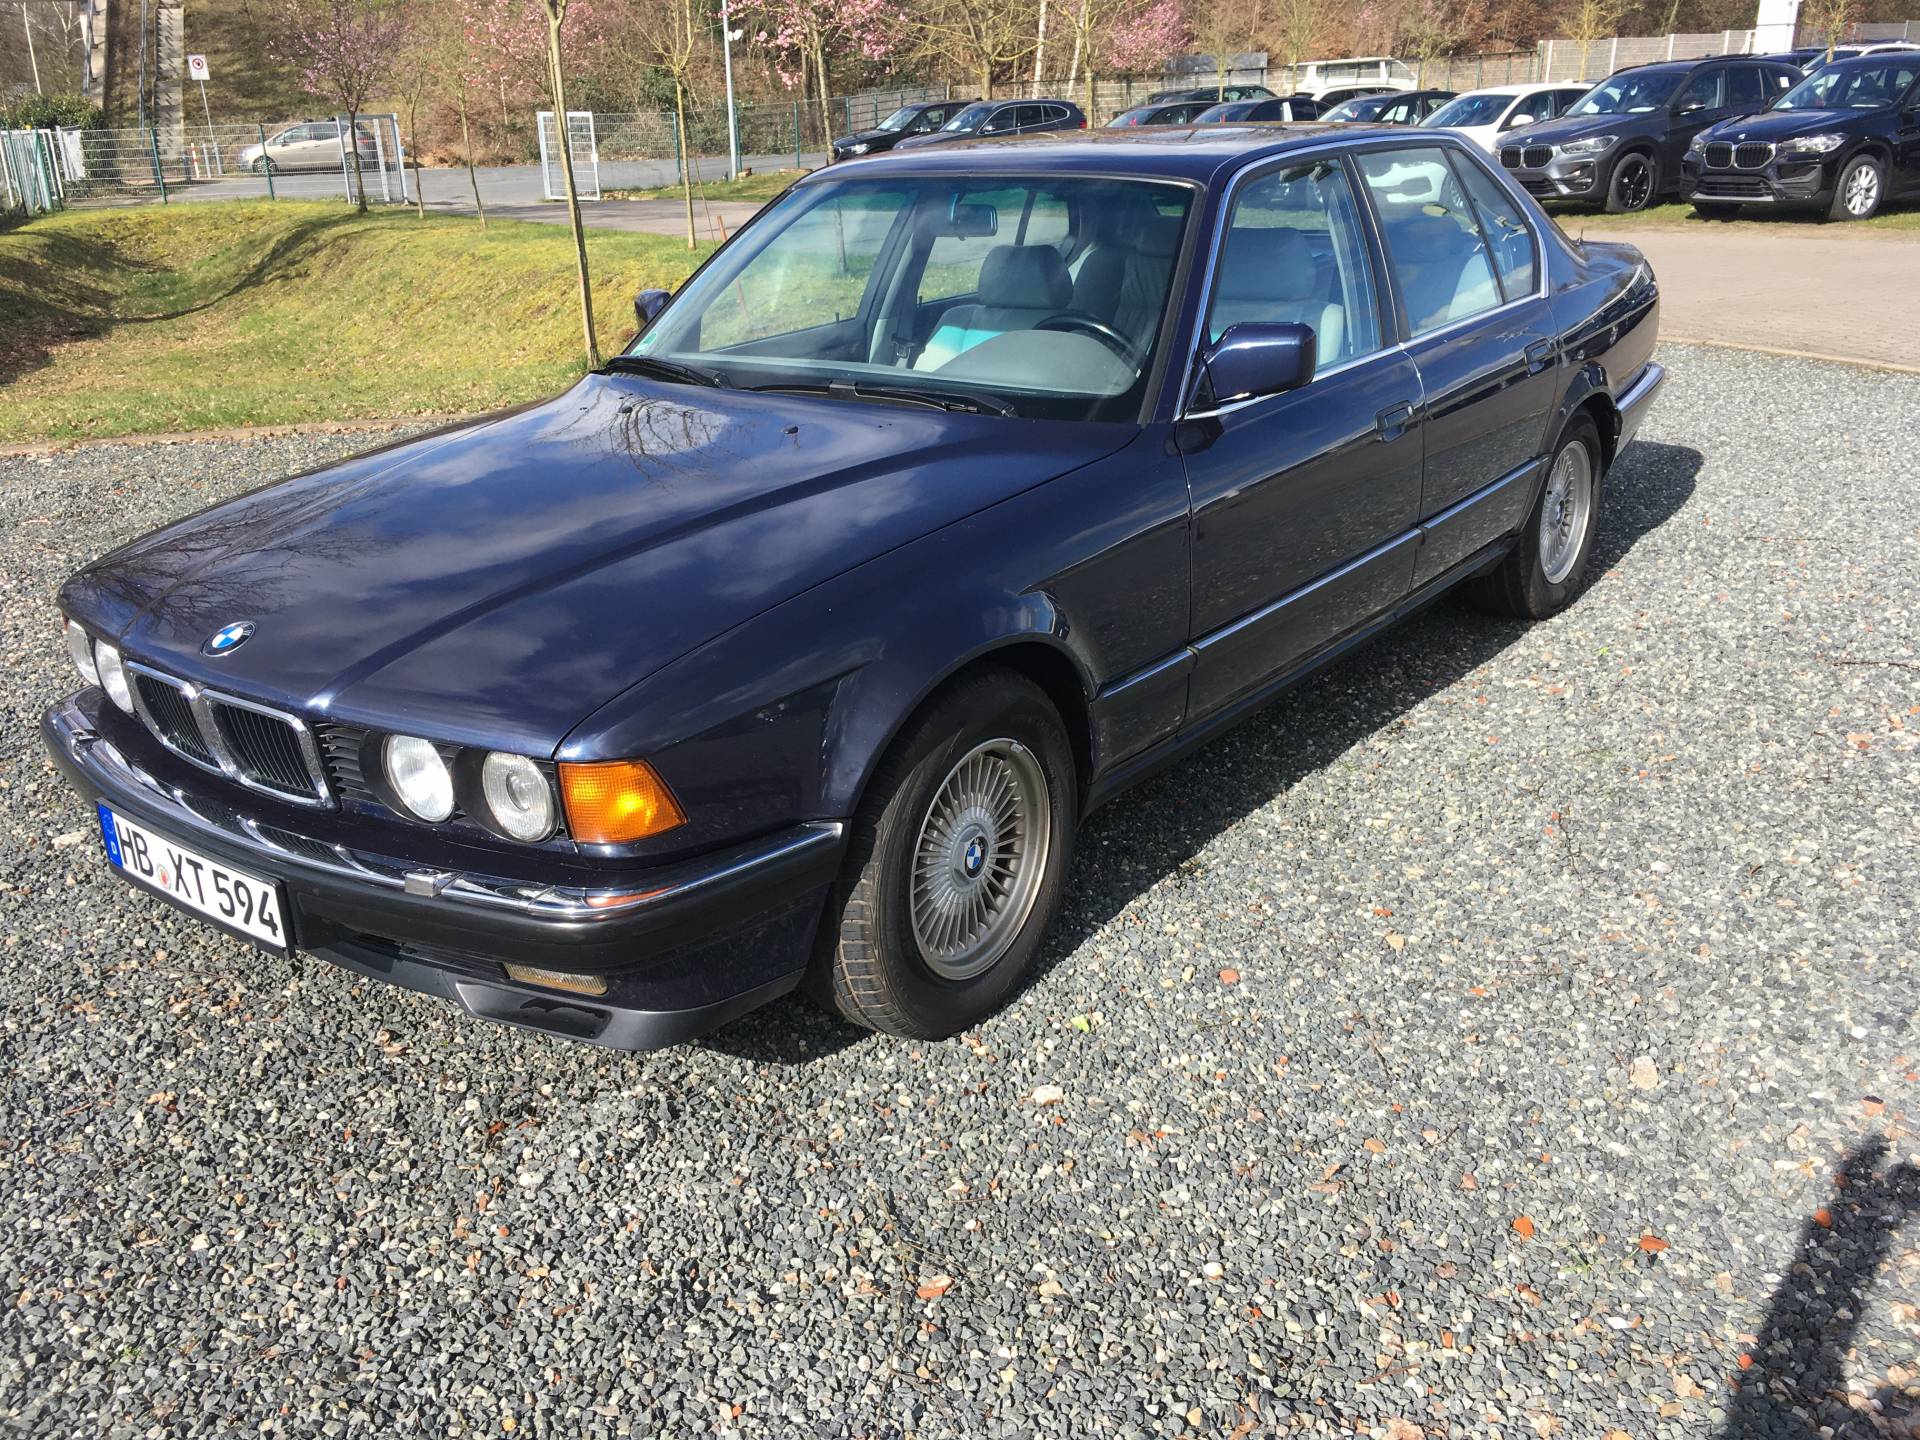 BMW 750i (1992) für 7.900 EUR kaufen